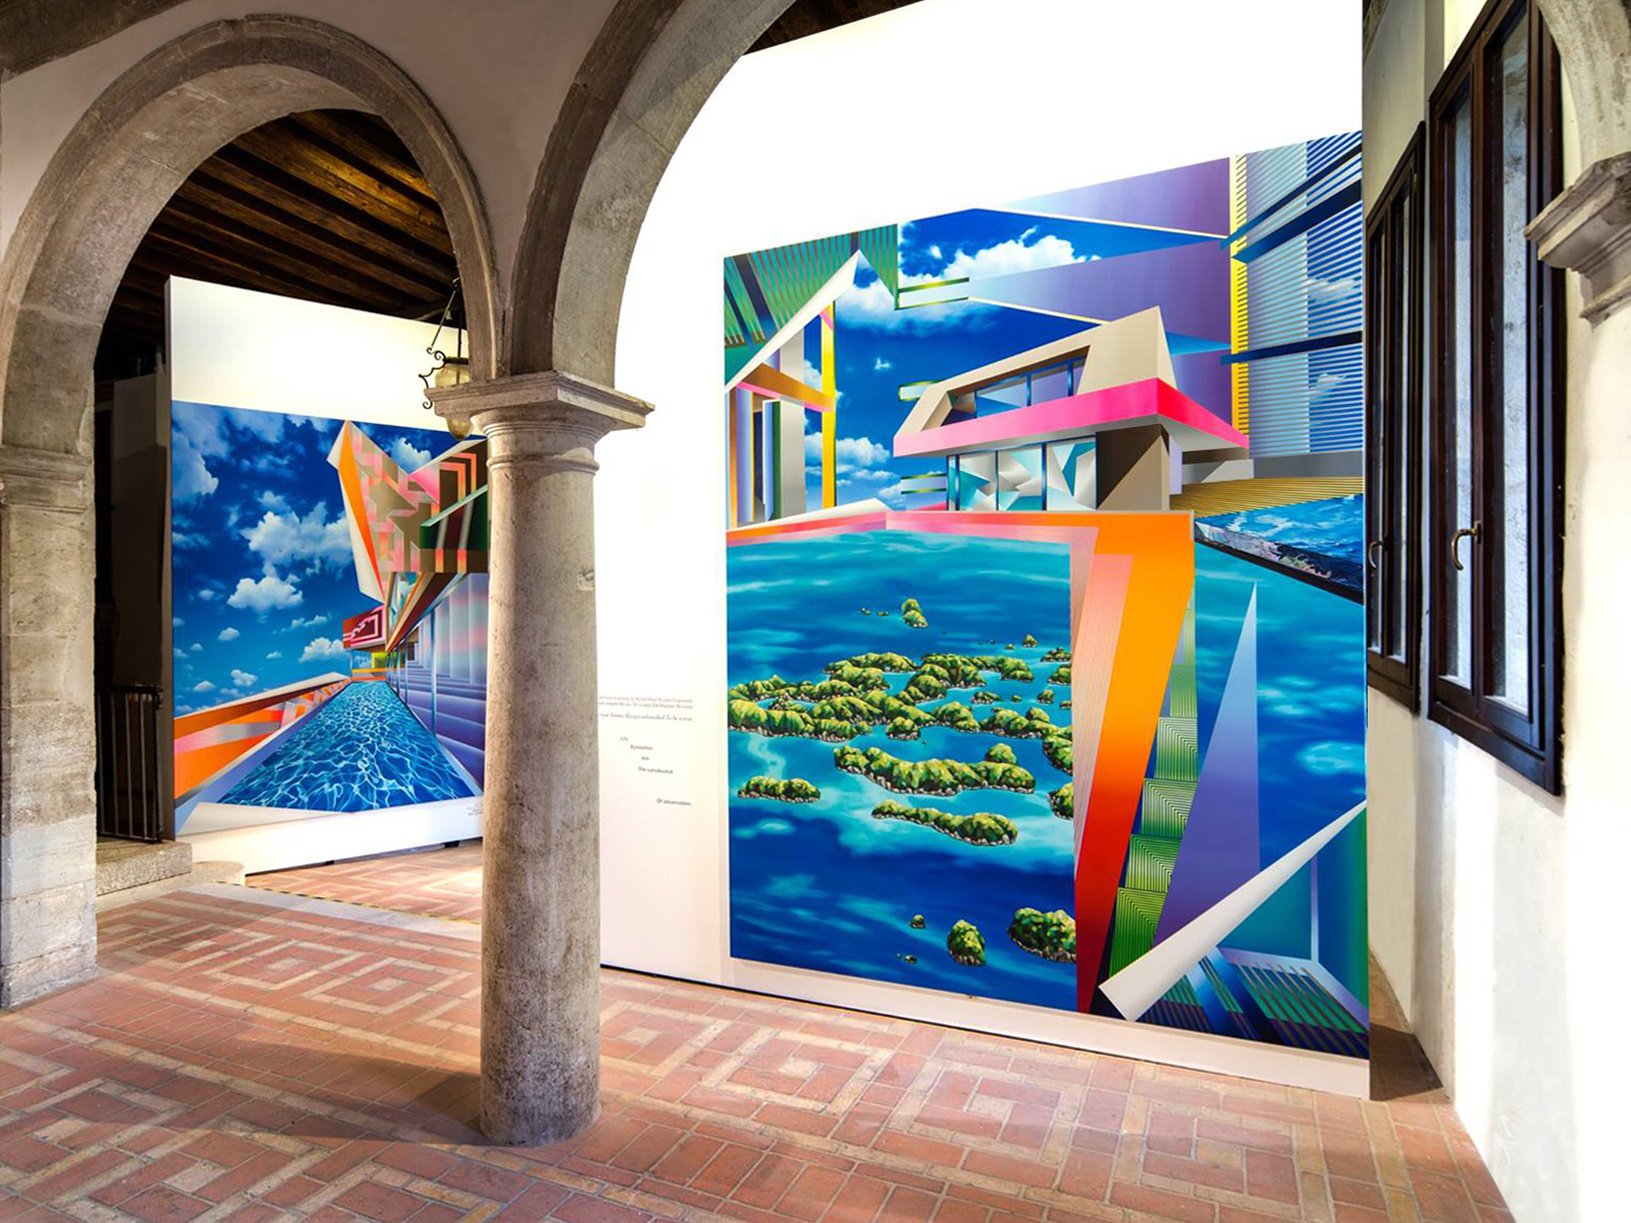  Padiglione Mauritius, 57ma Biennale di Venezia 